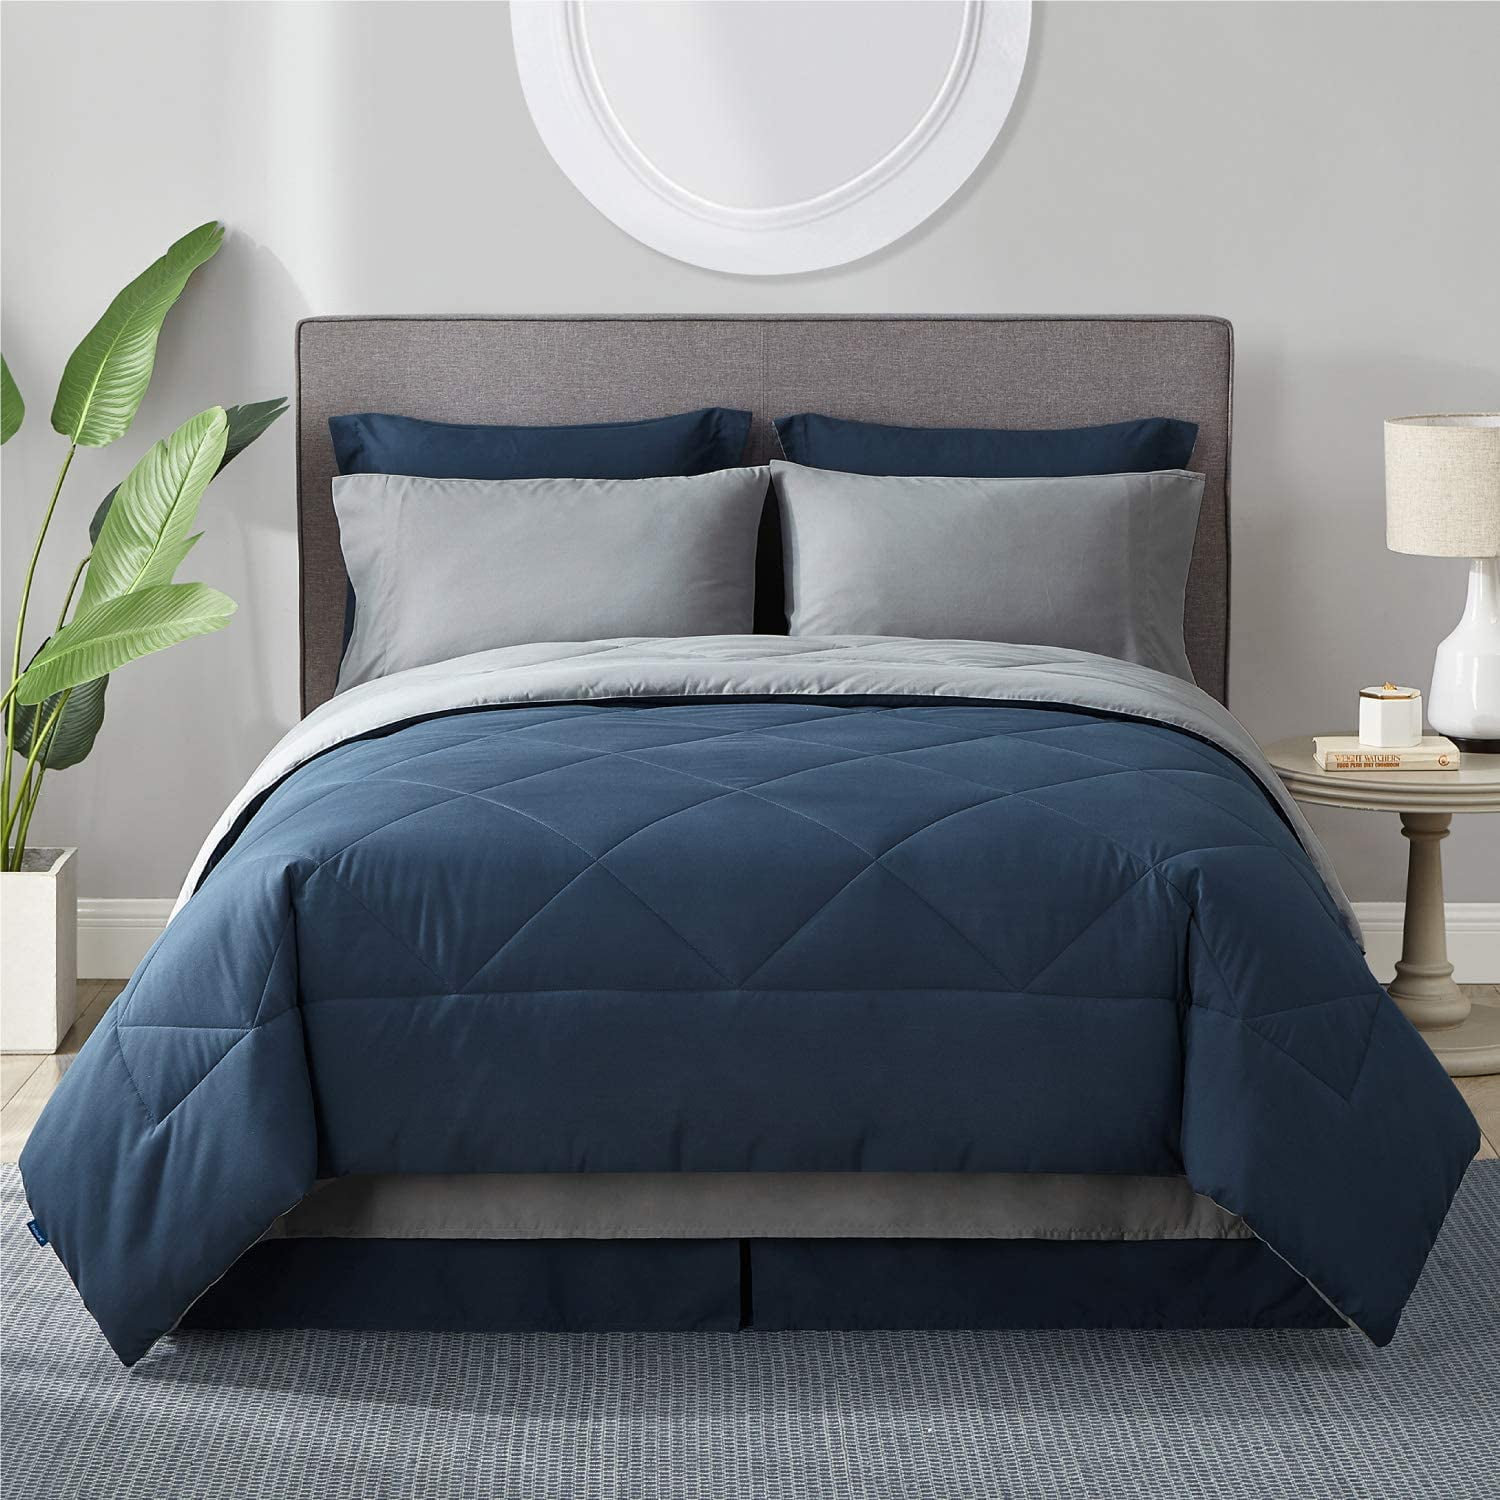 Microfiber Reversible Bedding Sets 8, Light Grey King Bed Sheets